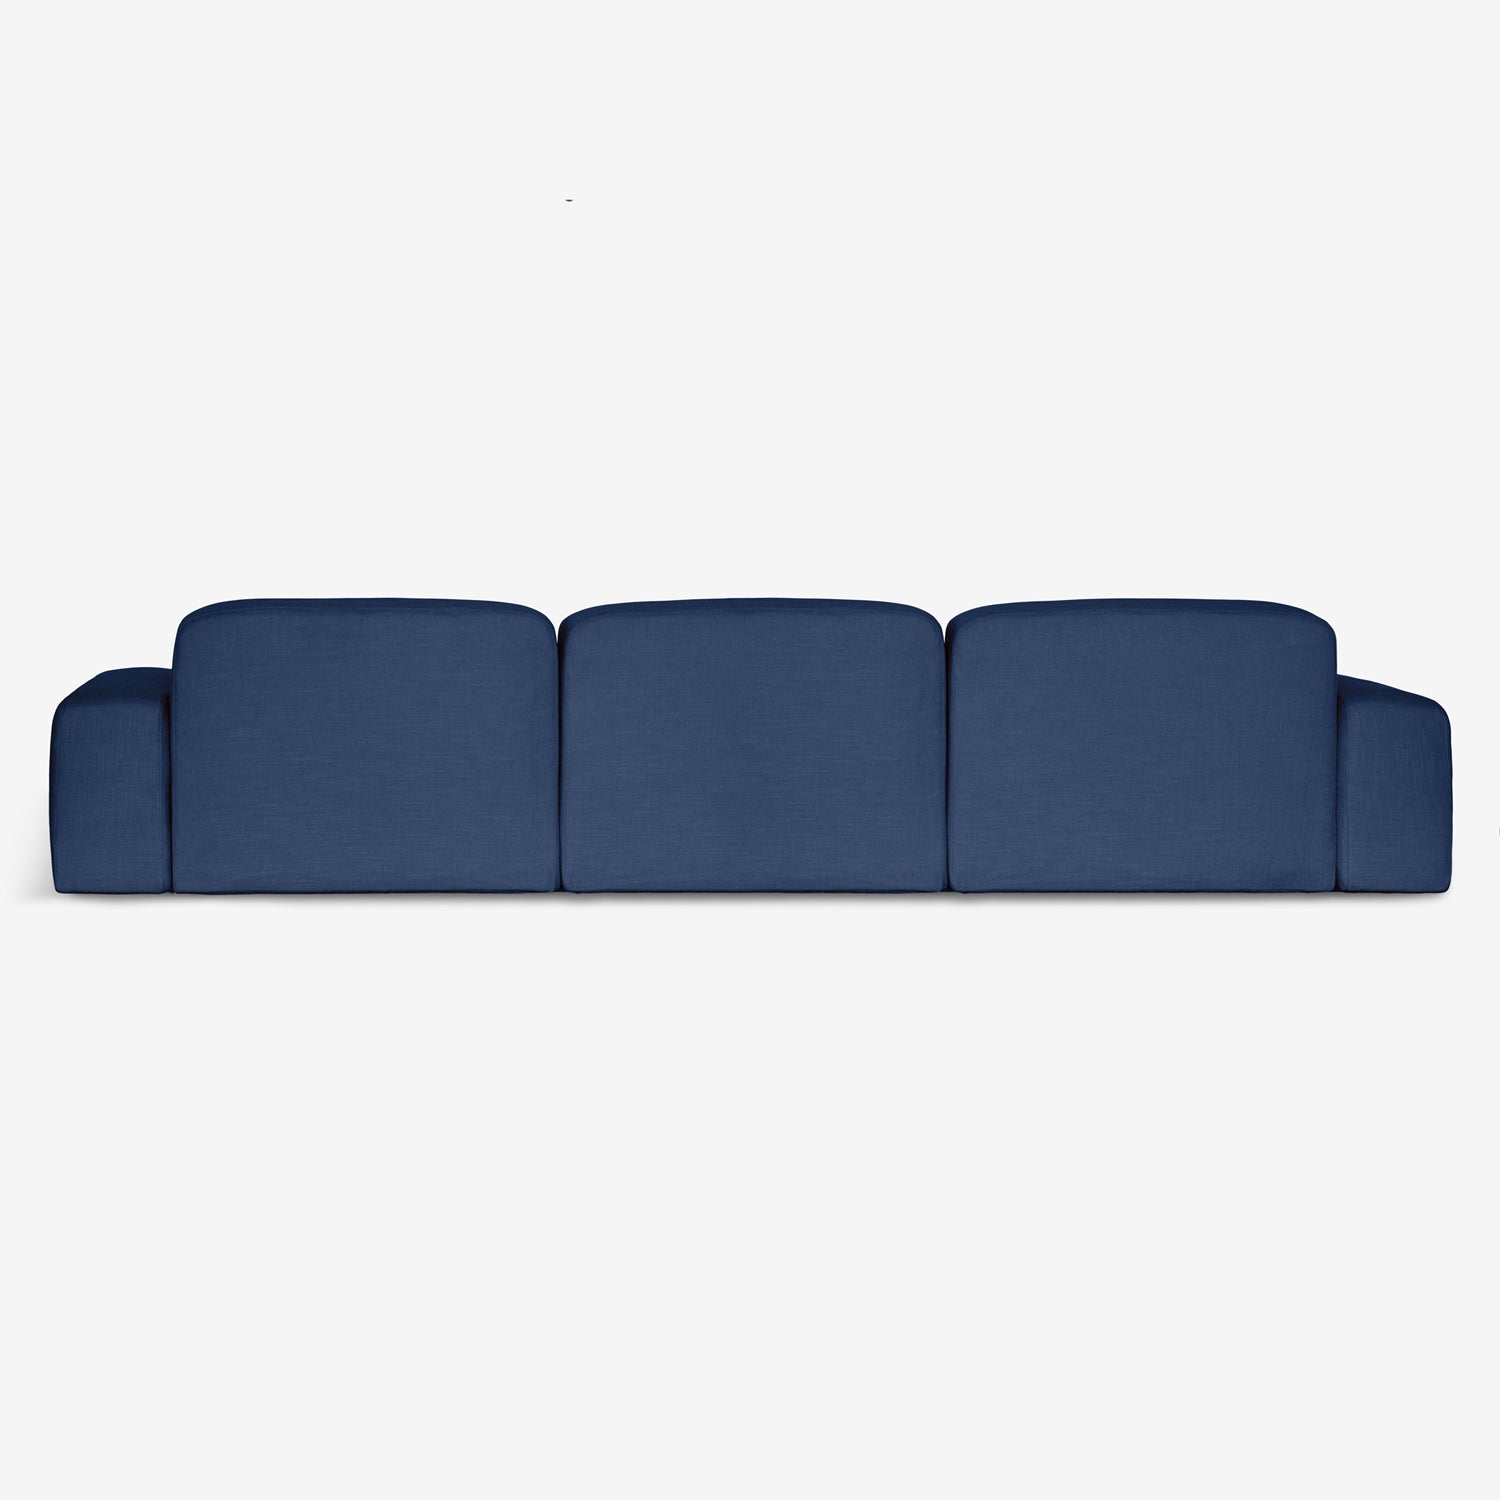 Libero 3.5 seater - Ethical and stylish navy blue sofa